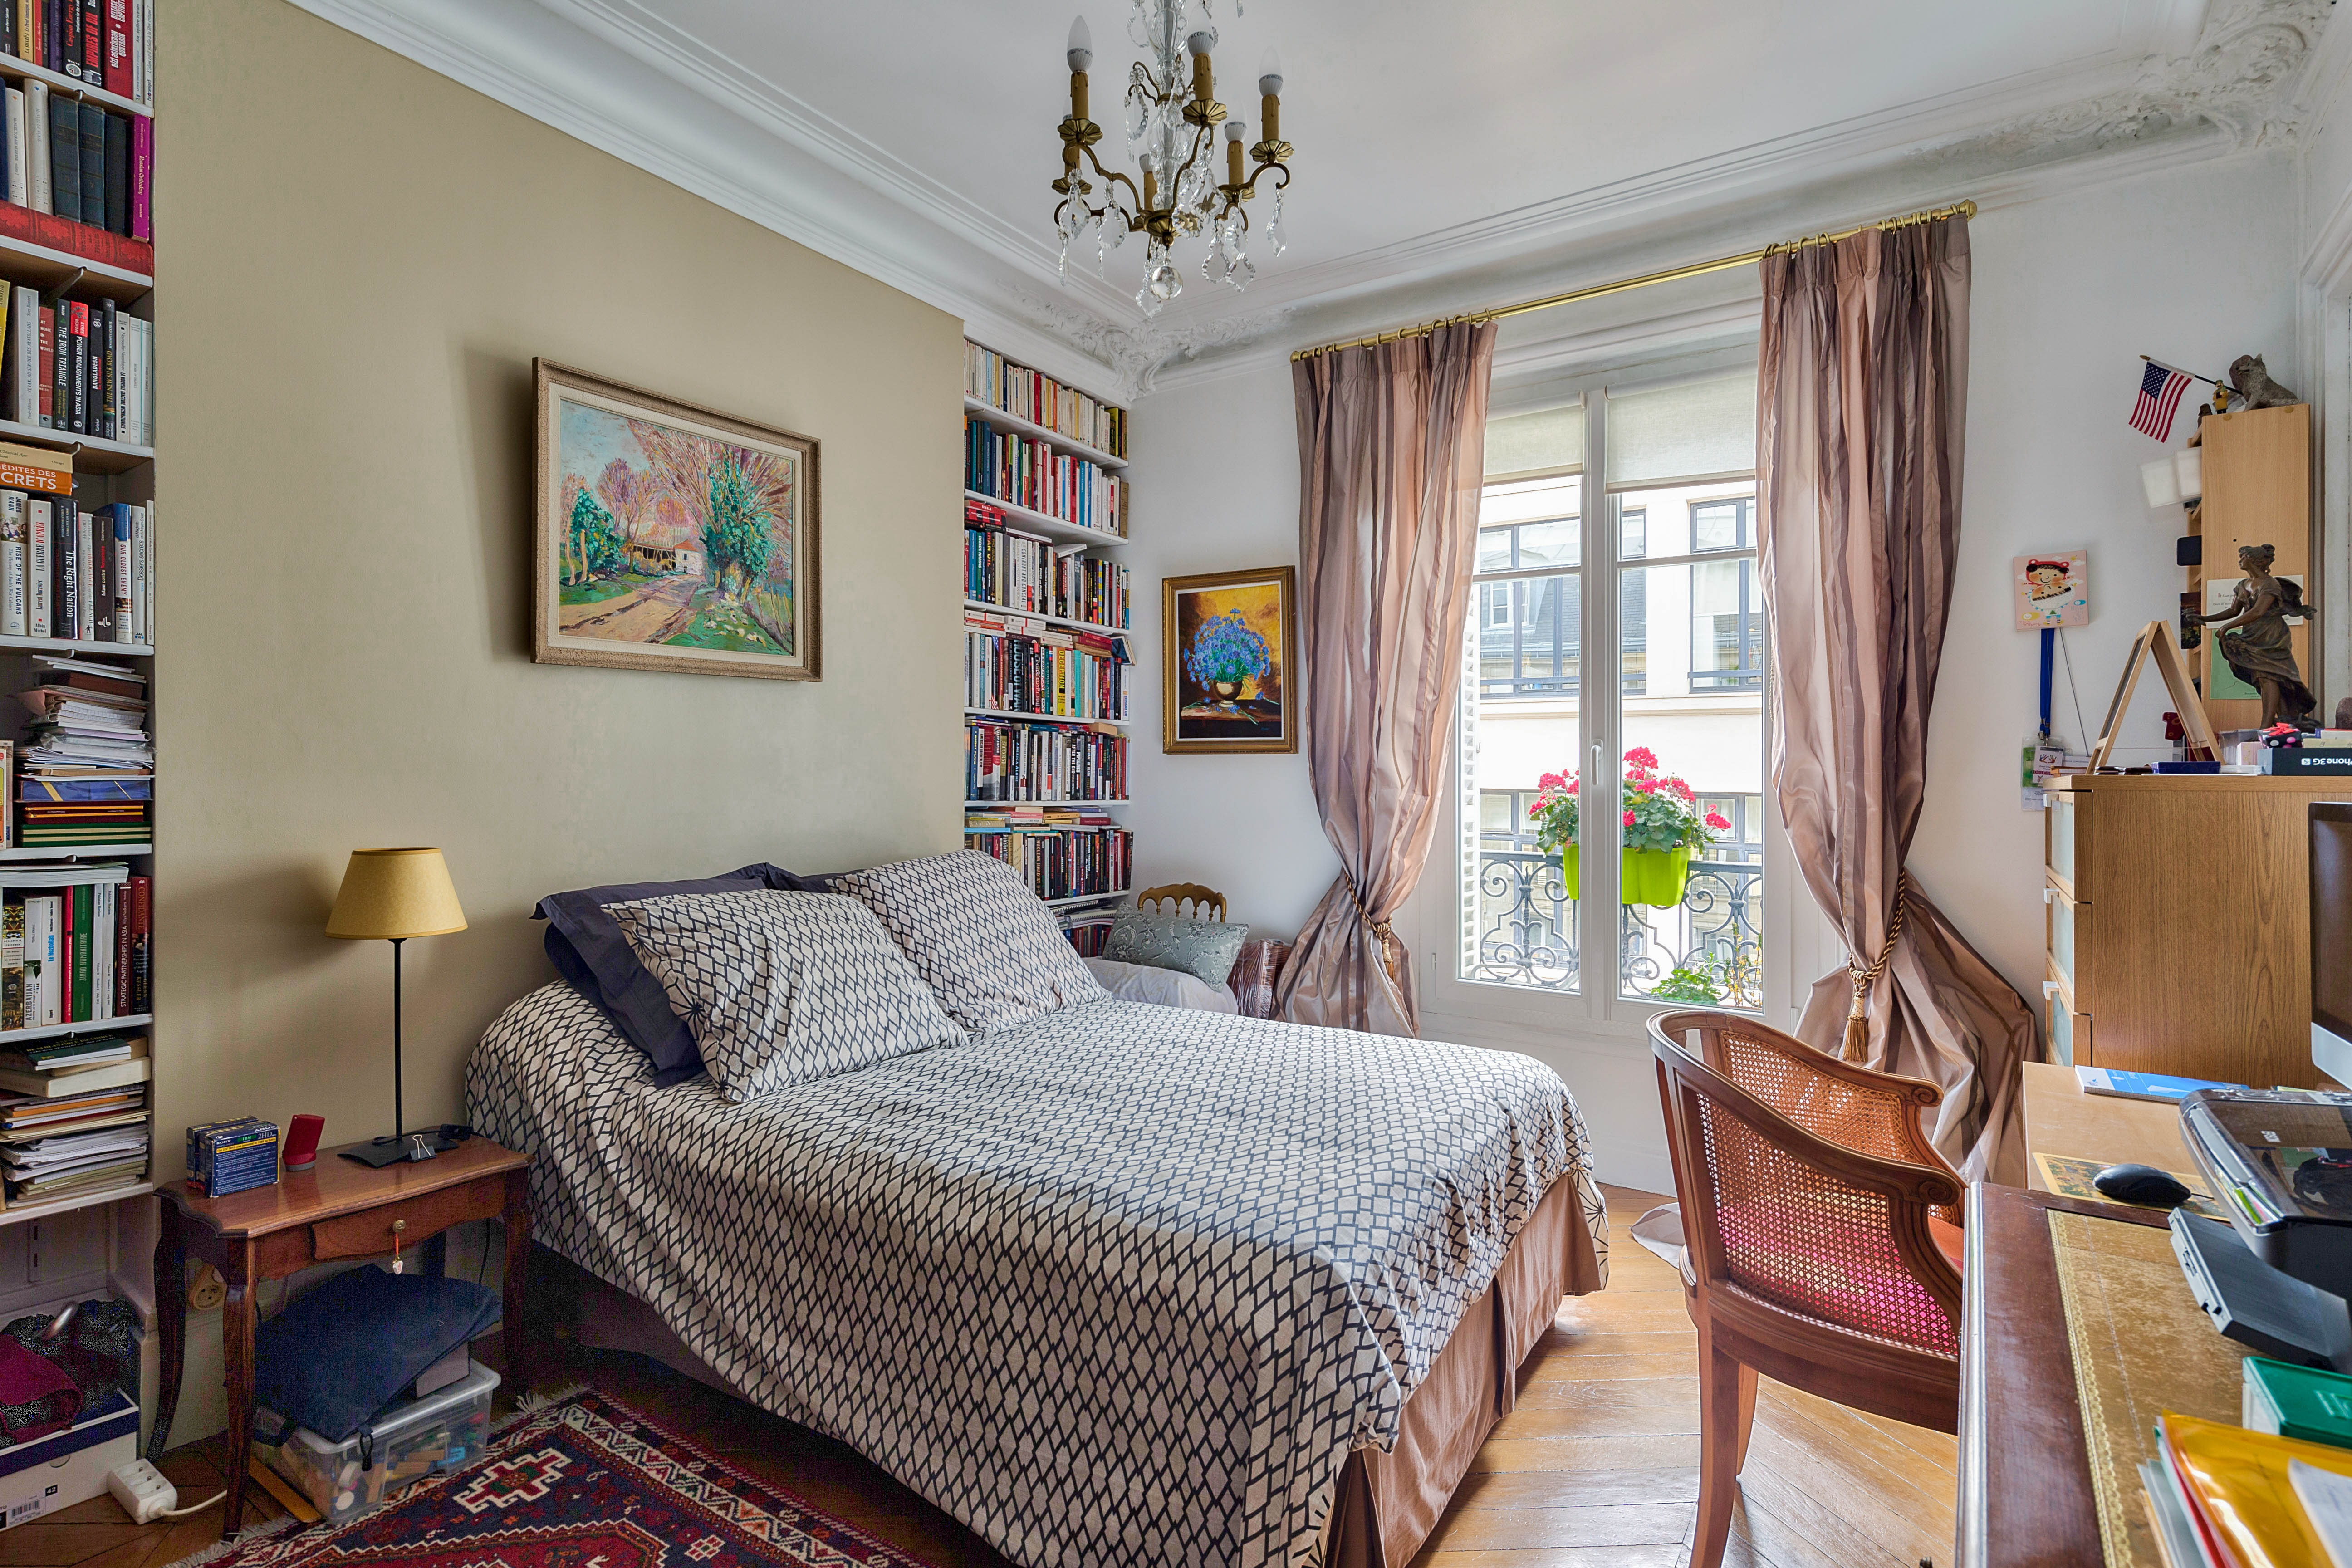 PropriLib l’agence immobilière sans commission vend cet appartement dans Paris 10ème